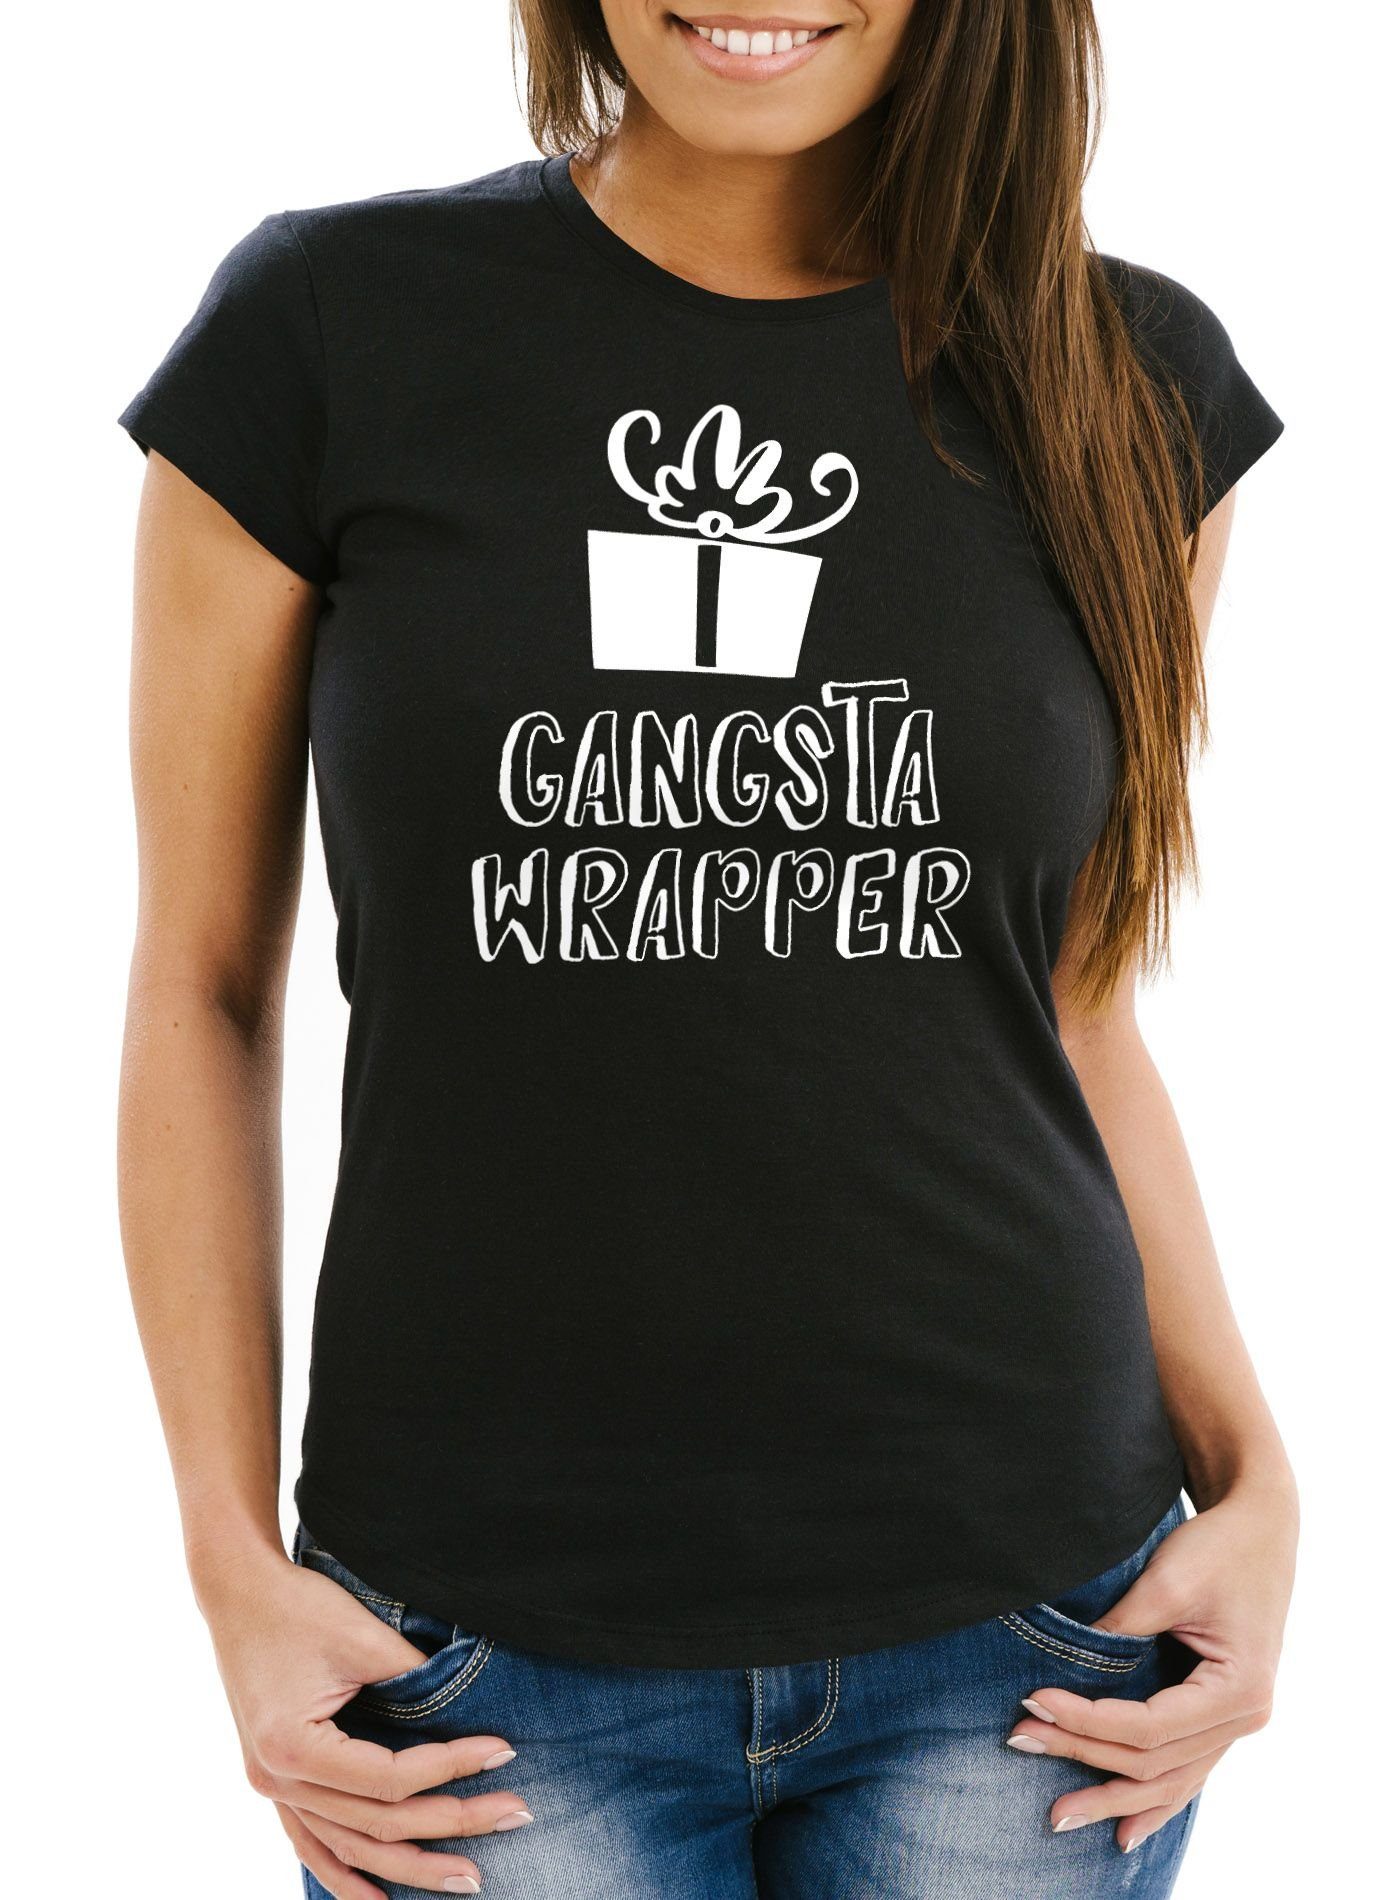 Einpacker Geschenk Print-Shirt Weihnachten Wrapper Gangsta Tasse Moonworks® Slim mit Weihnachtsshirt Print T-Shirt Damen MoonWorks Fit schwarz lustig